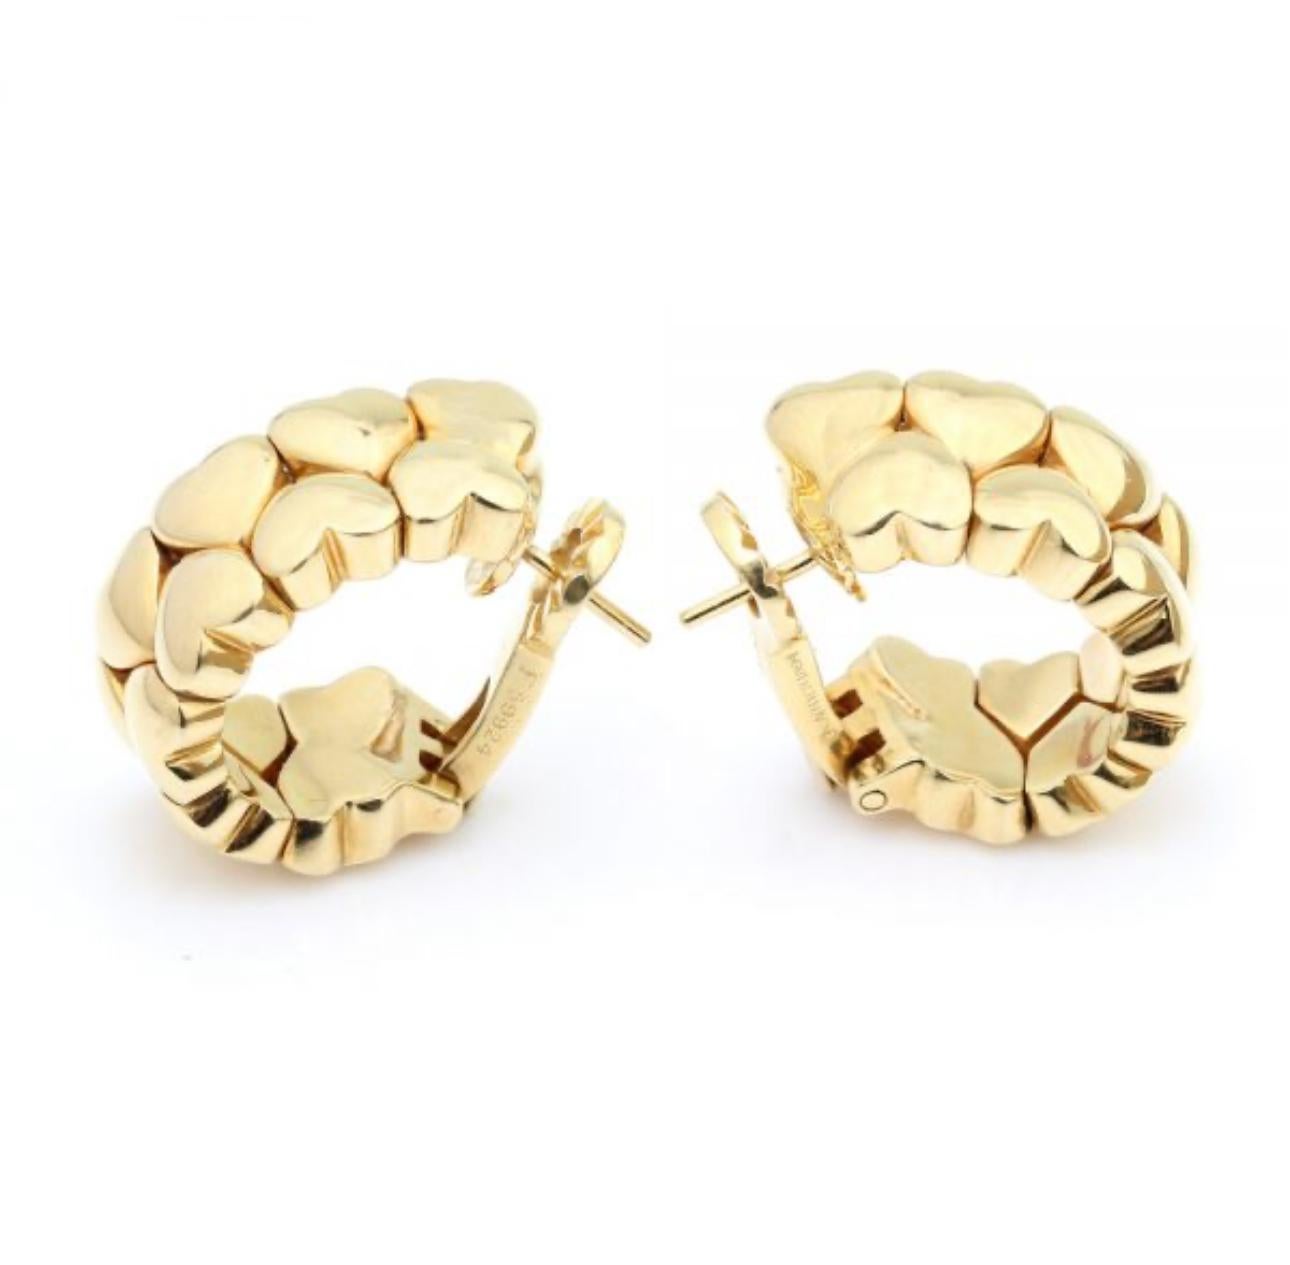 Ikonische Cartier-Ohrringe aus der Collection'S Double Coeurs
Ring mit Ohrringen aus zwei Reihen polierter Goldherzen.

Gezeichnet: vollständig signiert Cartier, 1994, nummeriert, 750. Gewicht - 31,7 Gramm.
Abmessungen: 2 cm in der Länge 1 cm